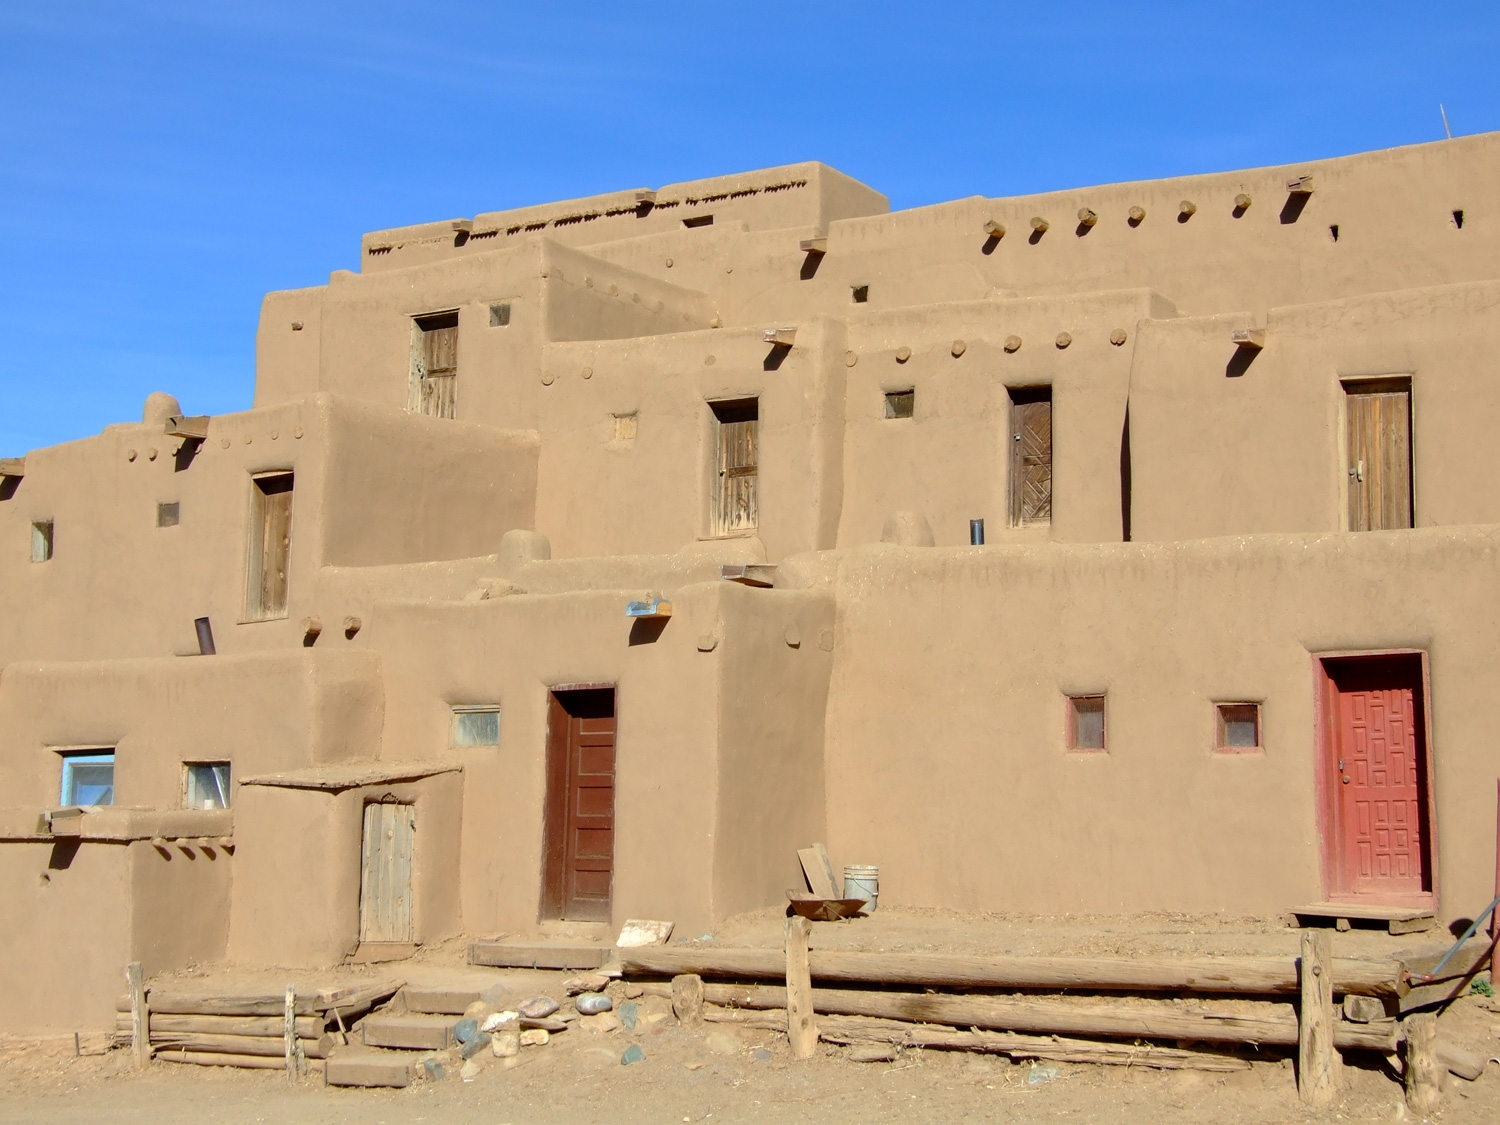 The Taos Pueblo